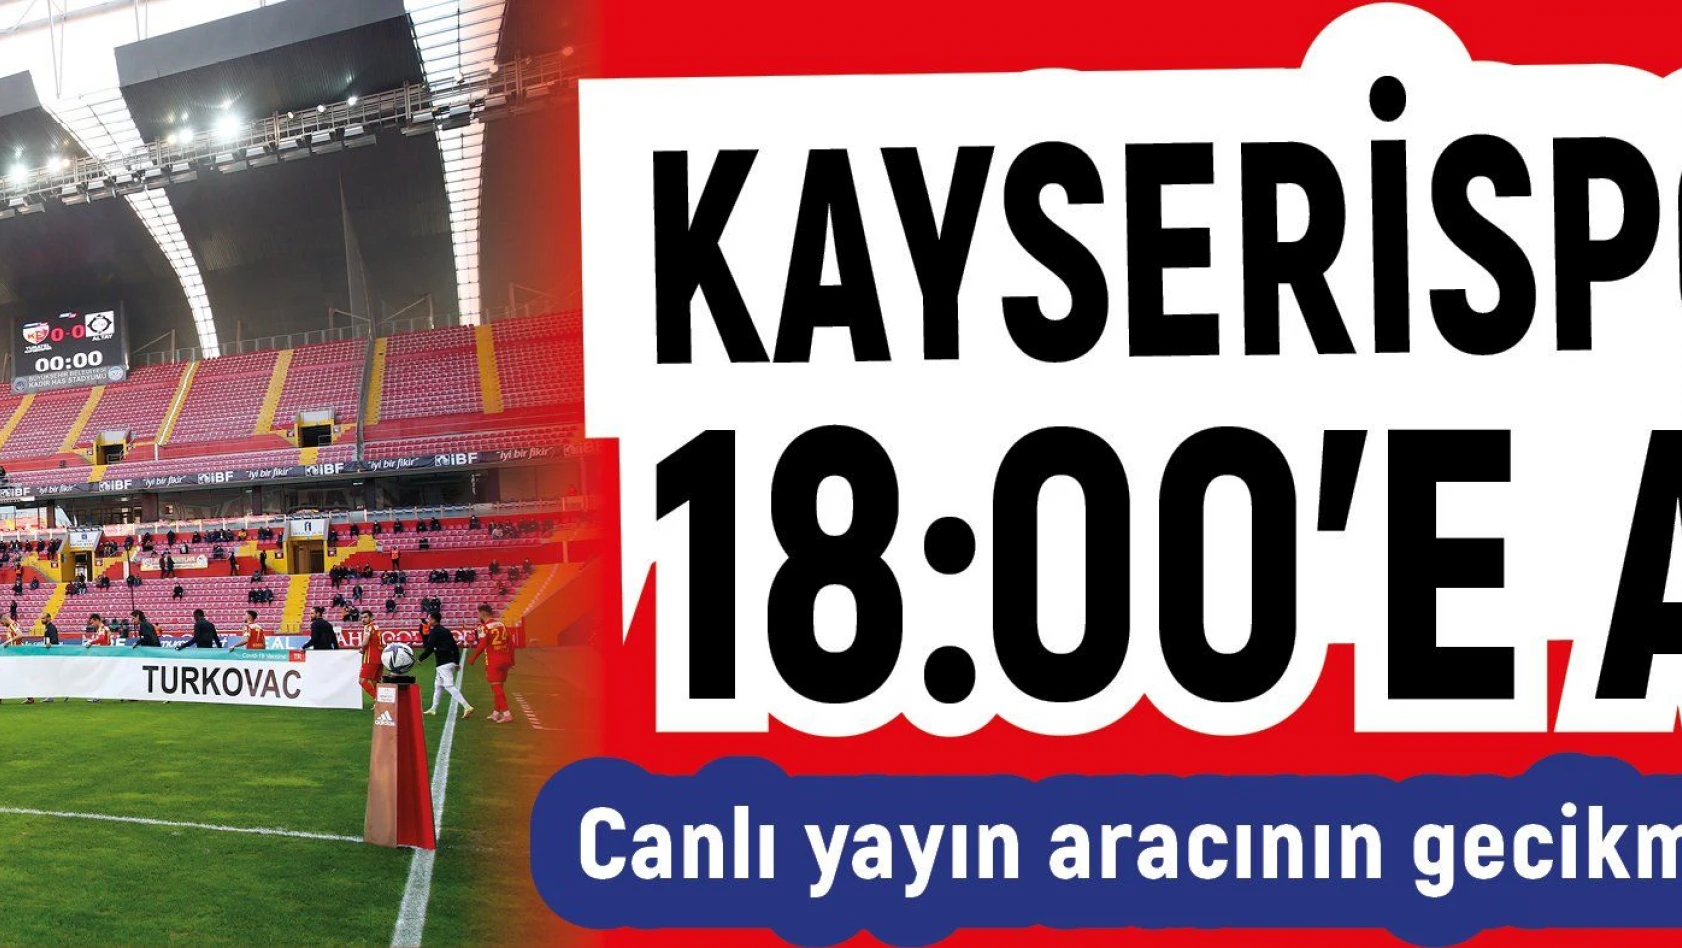 Kayserispor maçı saat 18:00'de alındı